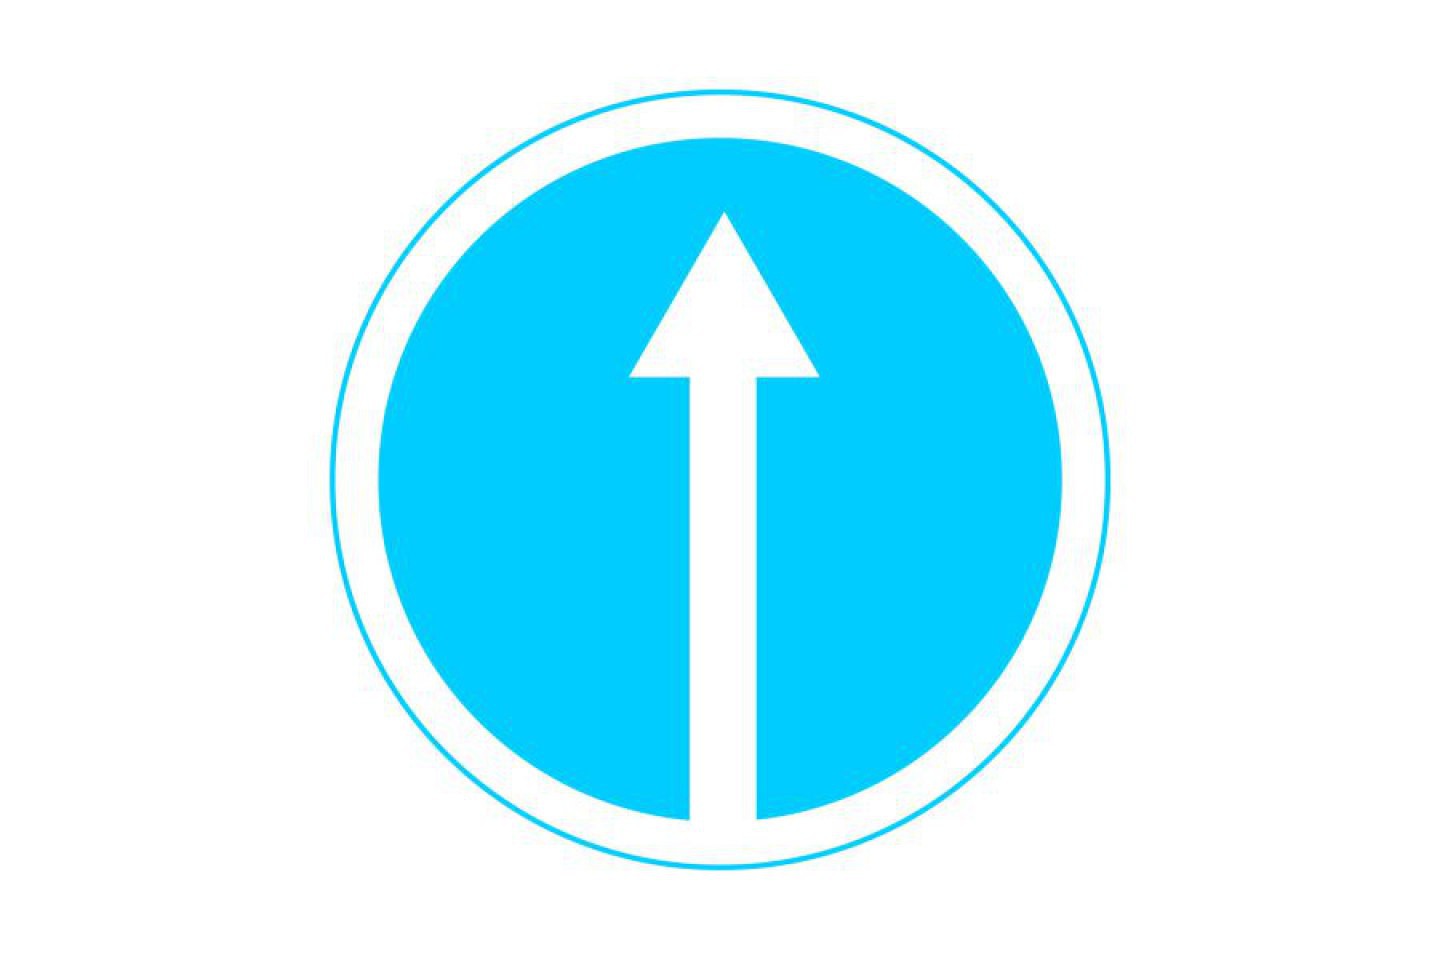 Знак со стрелкой на синем фоне